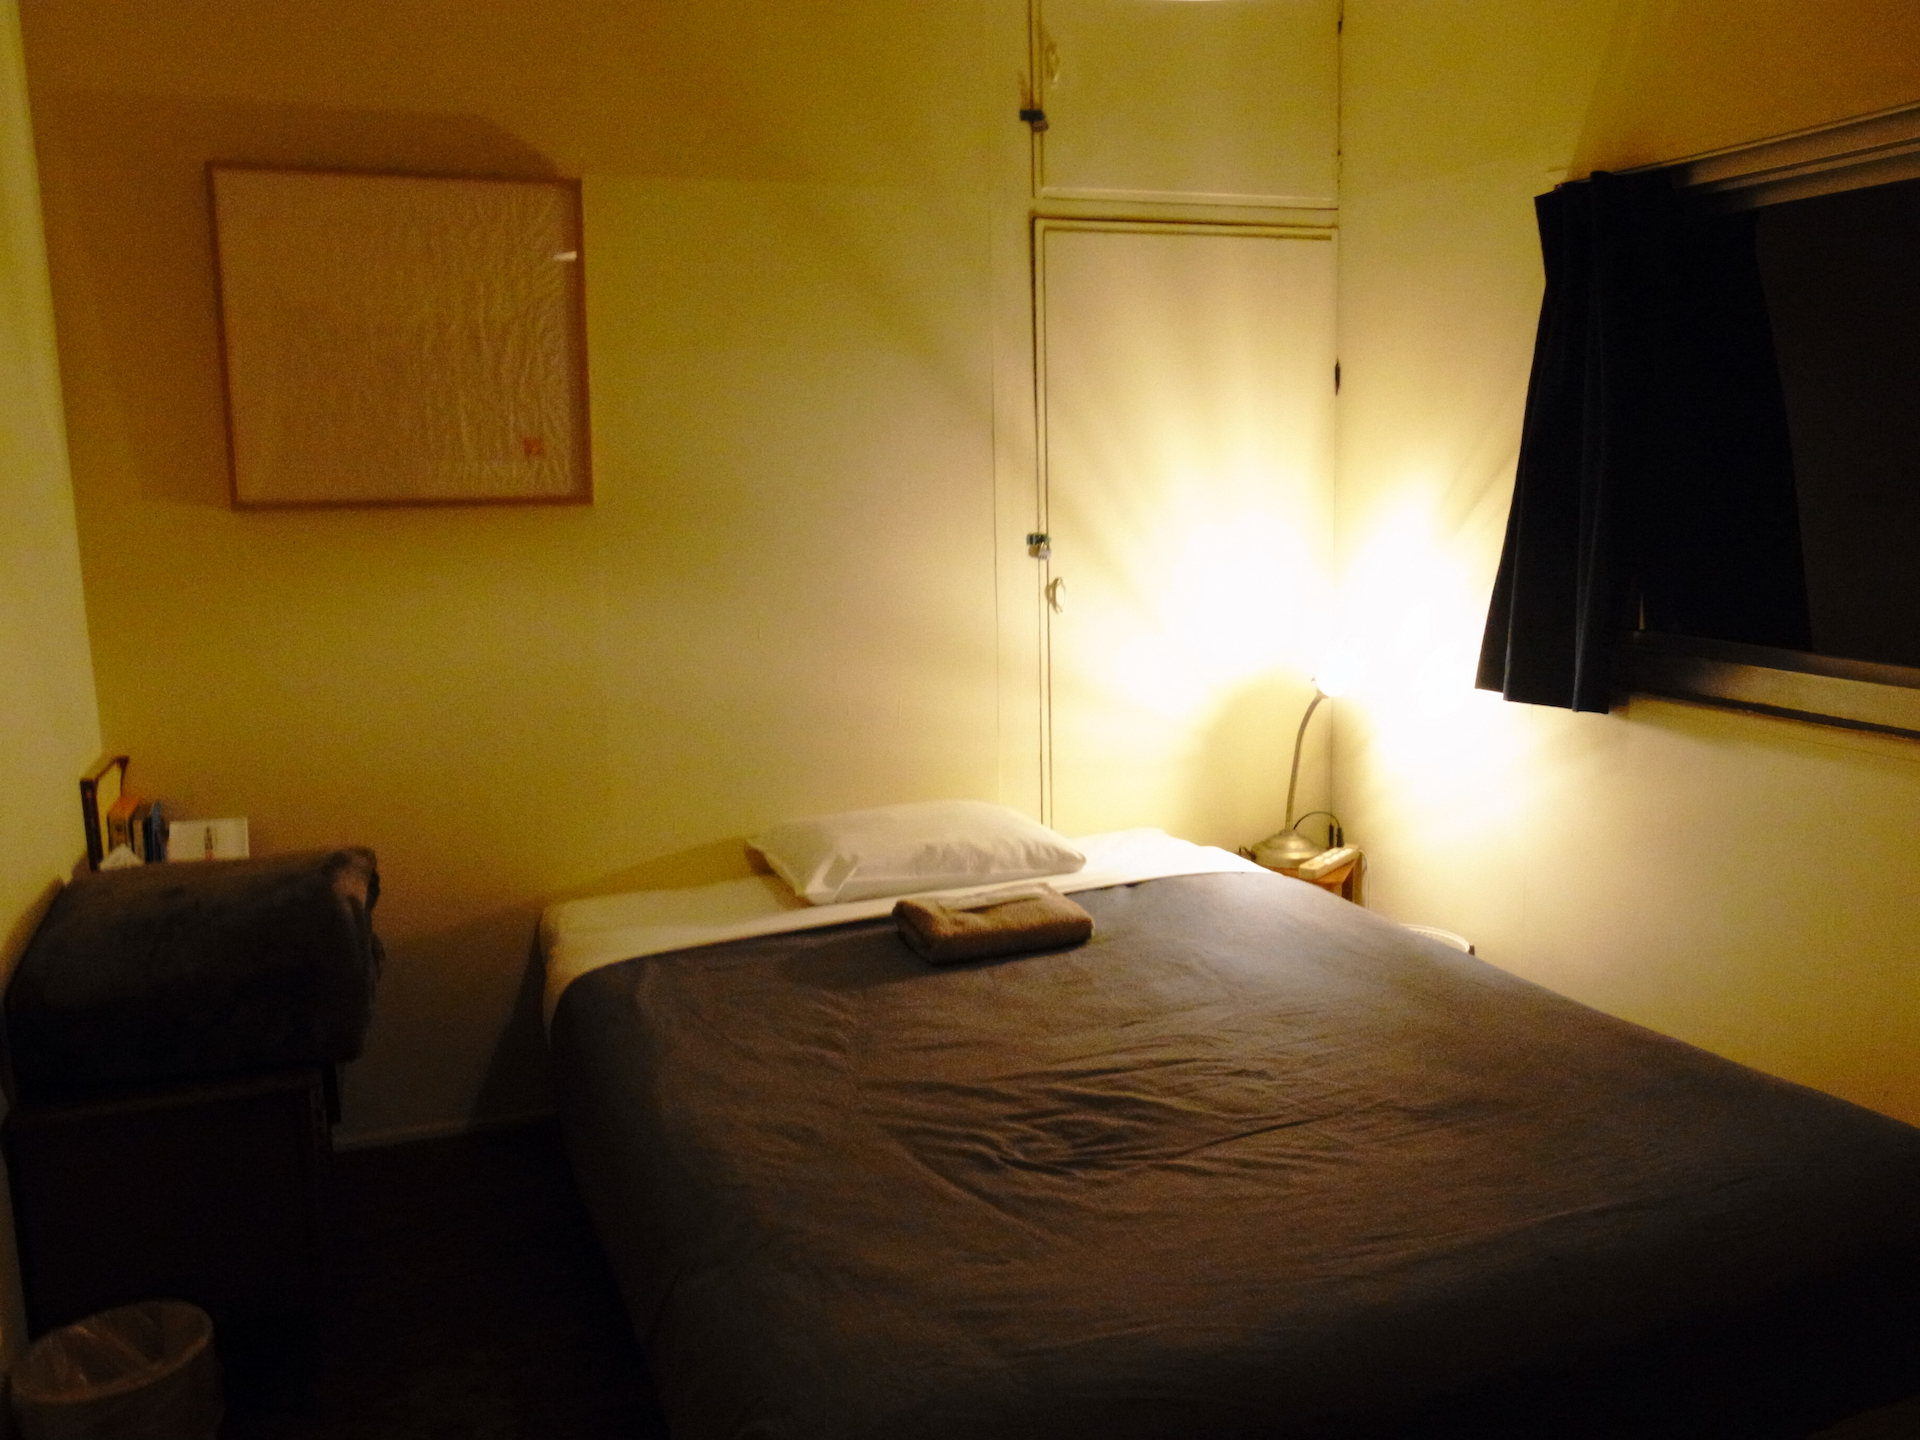 ベッドと間接照明が灯る部屋のRICOH GR DIGITAL IVの作例